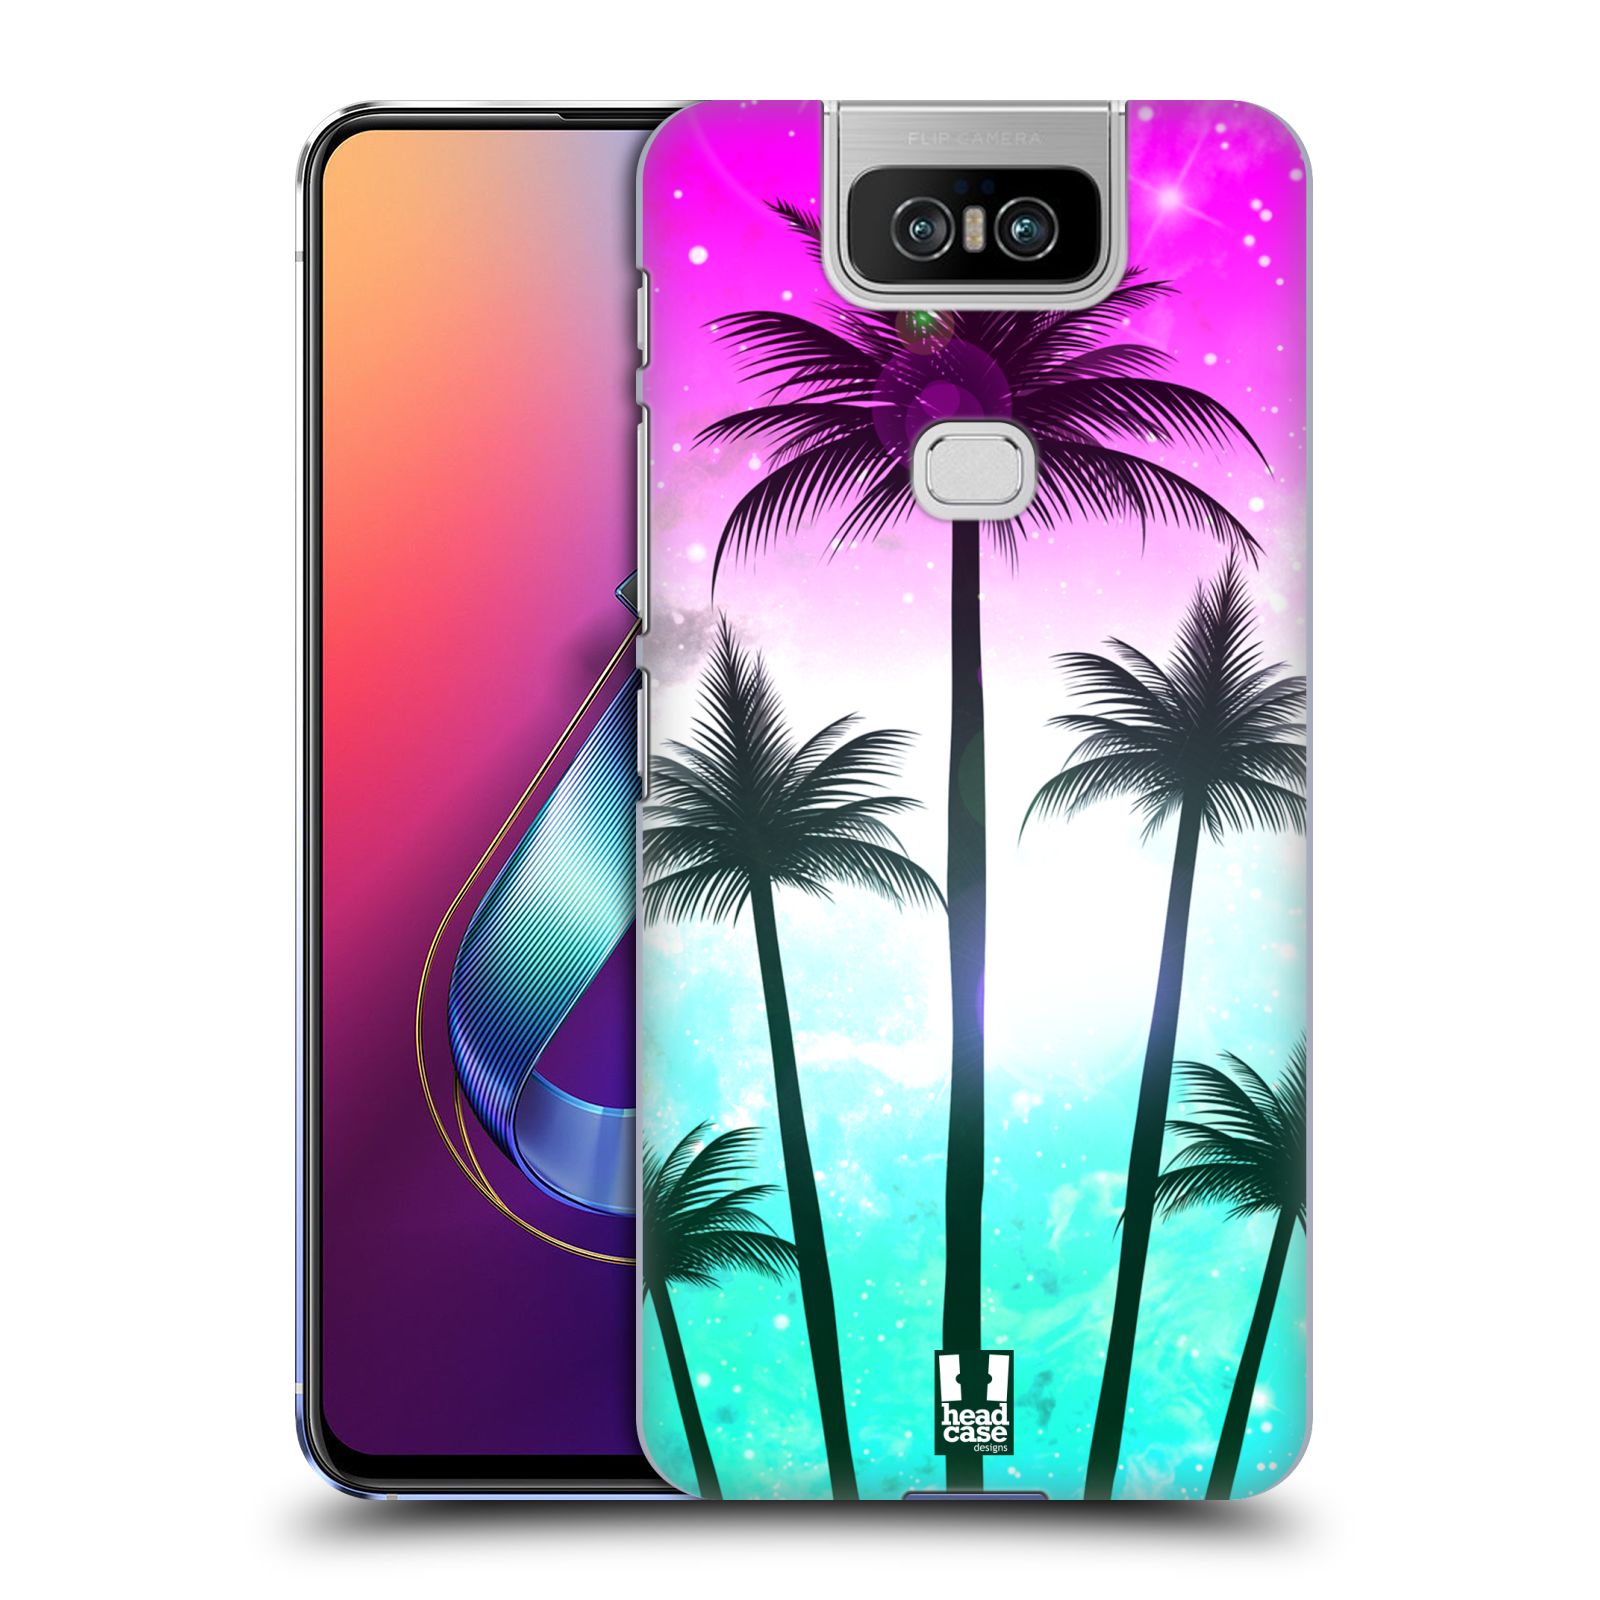 Pouzdro na mobil Asus Zenfone 6 ZS630KL - HEAD CASE - vzor Kreslený motiv silueta moře a palmy RŮŽOVÁ A TYRKYS